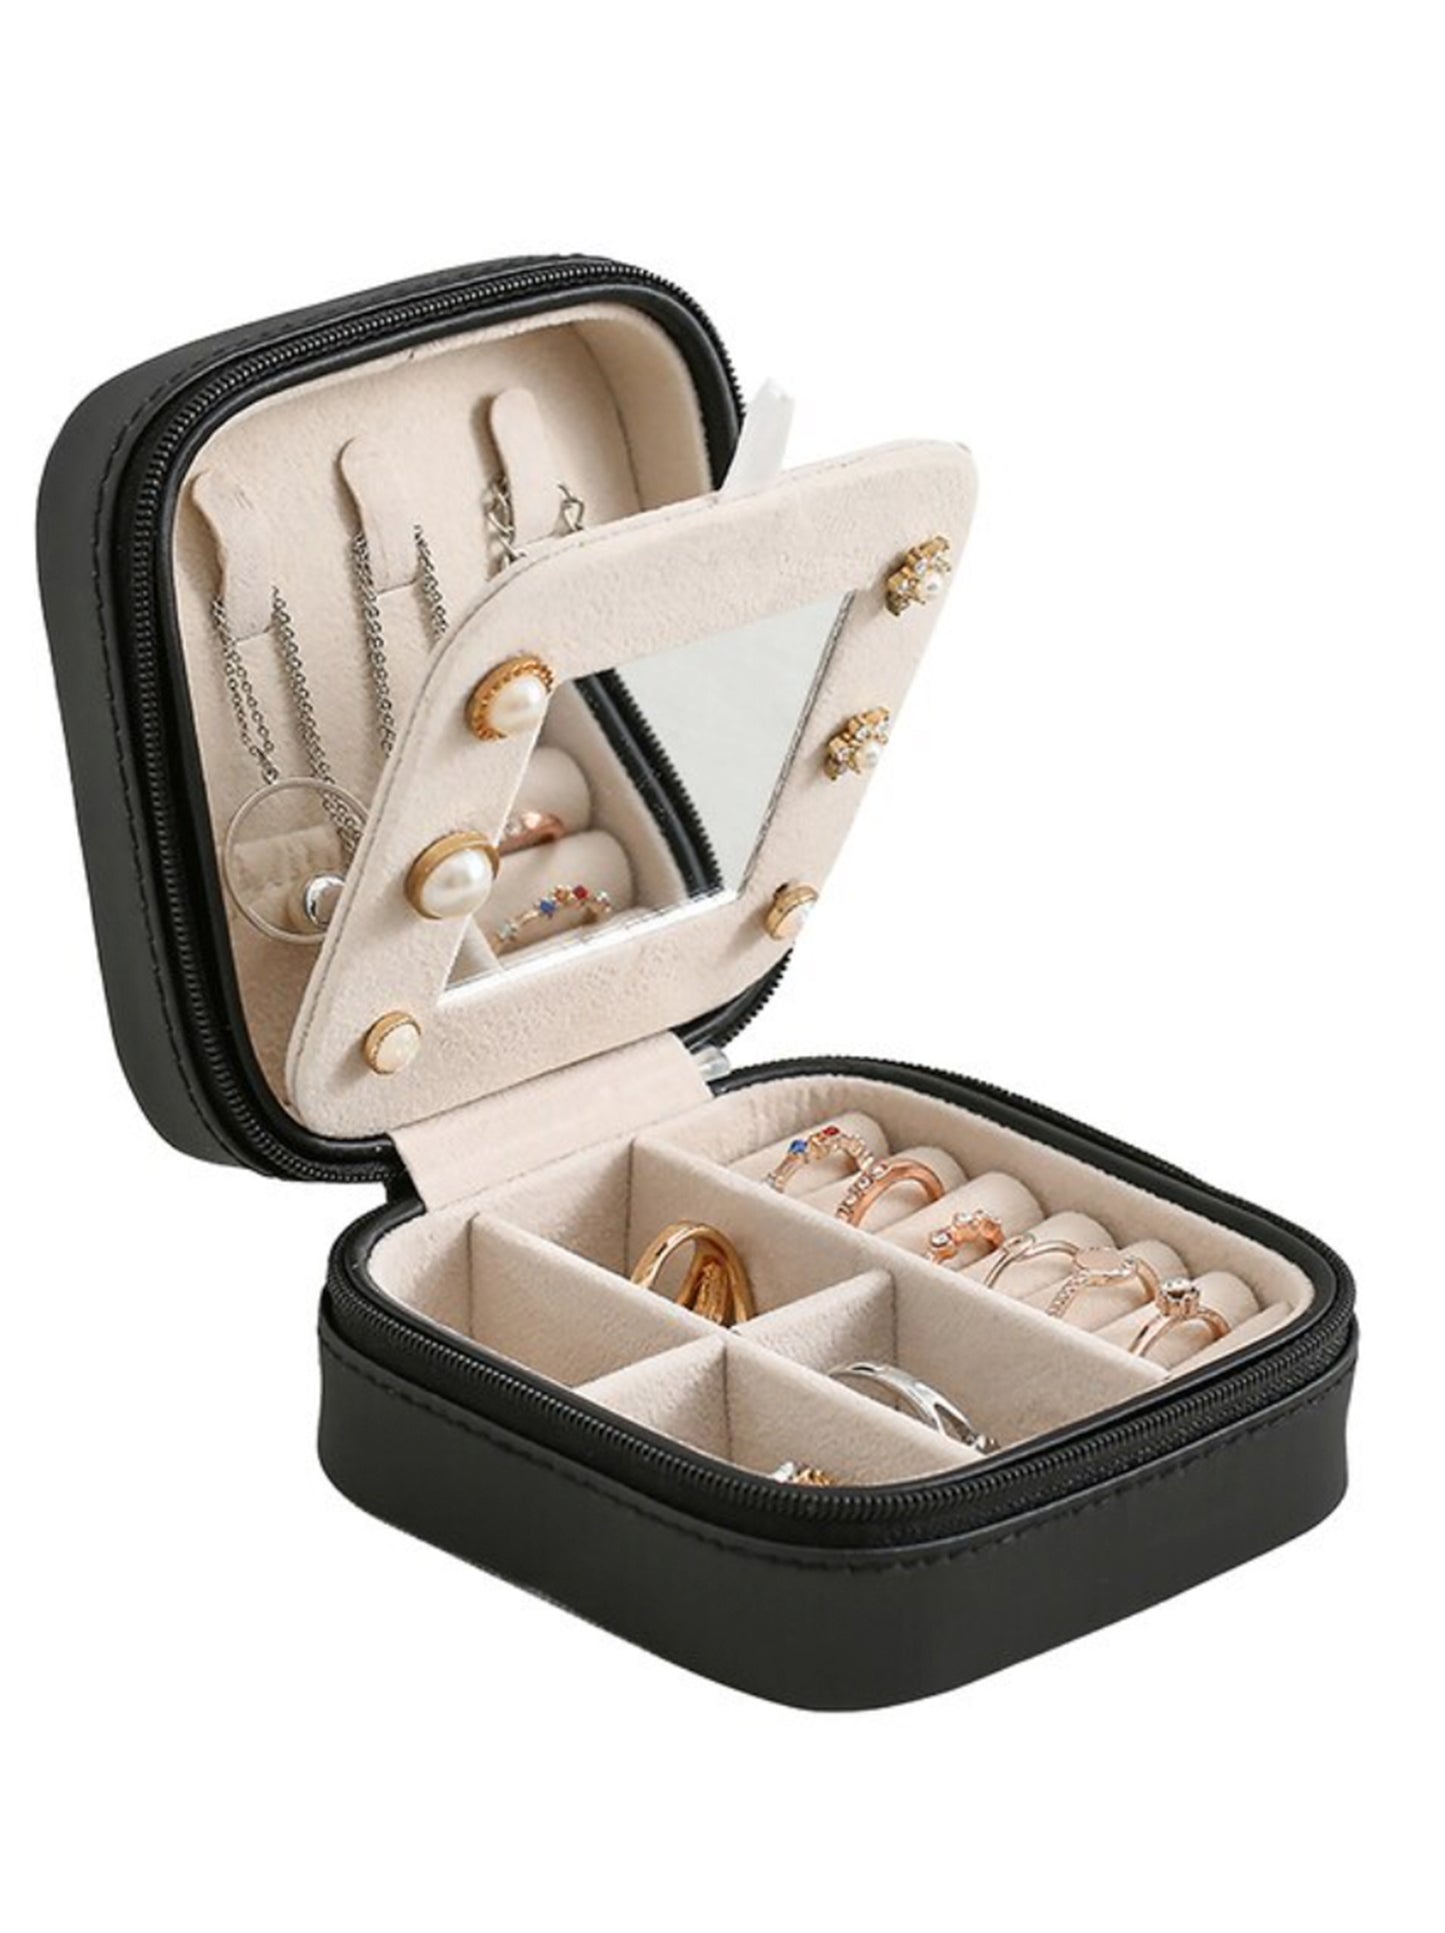 Jewelry Storage Organizer box Jewelry Case